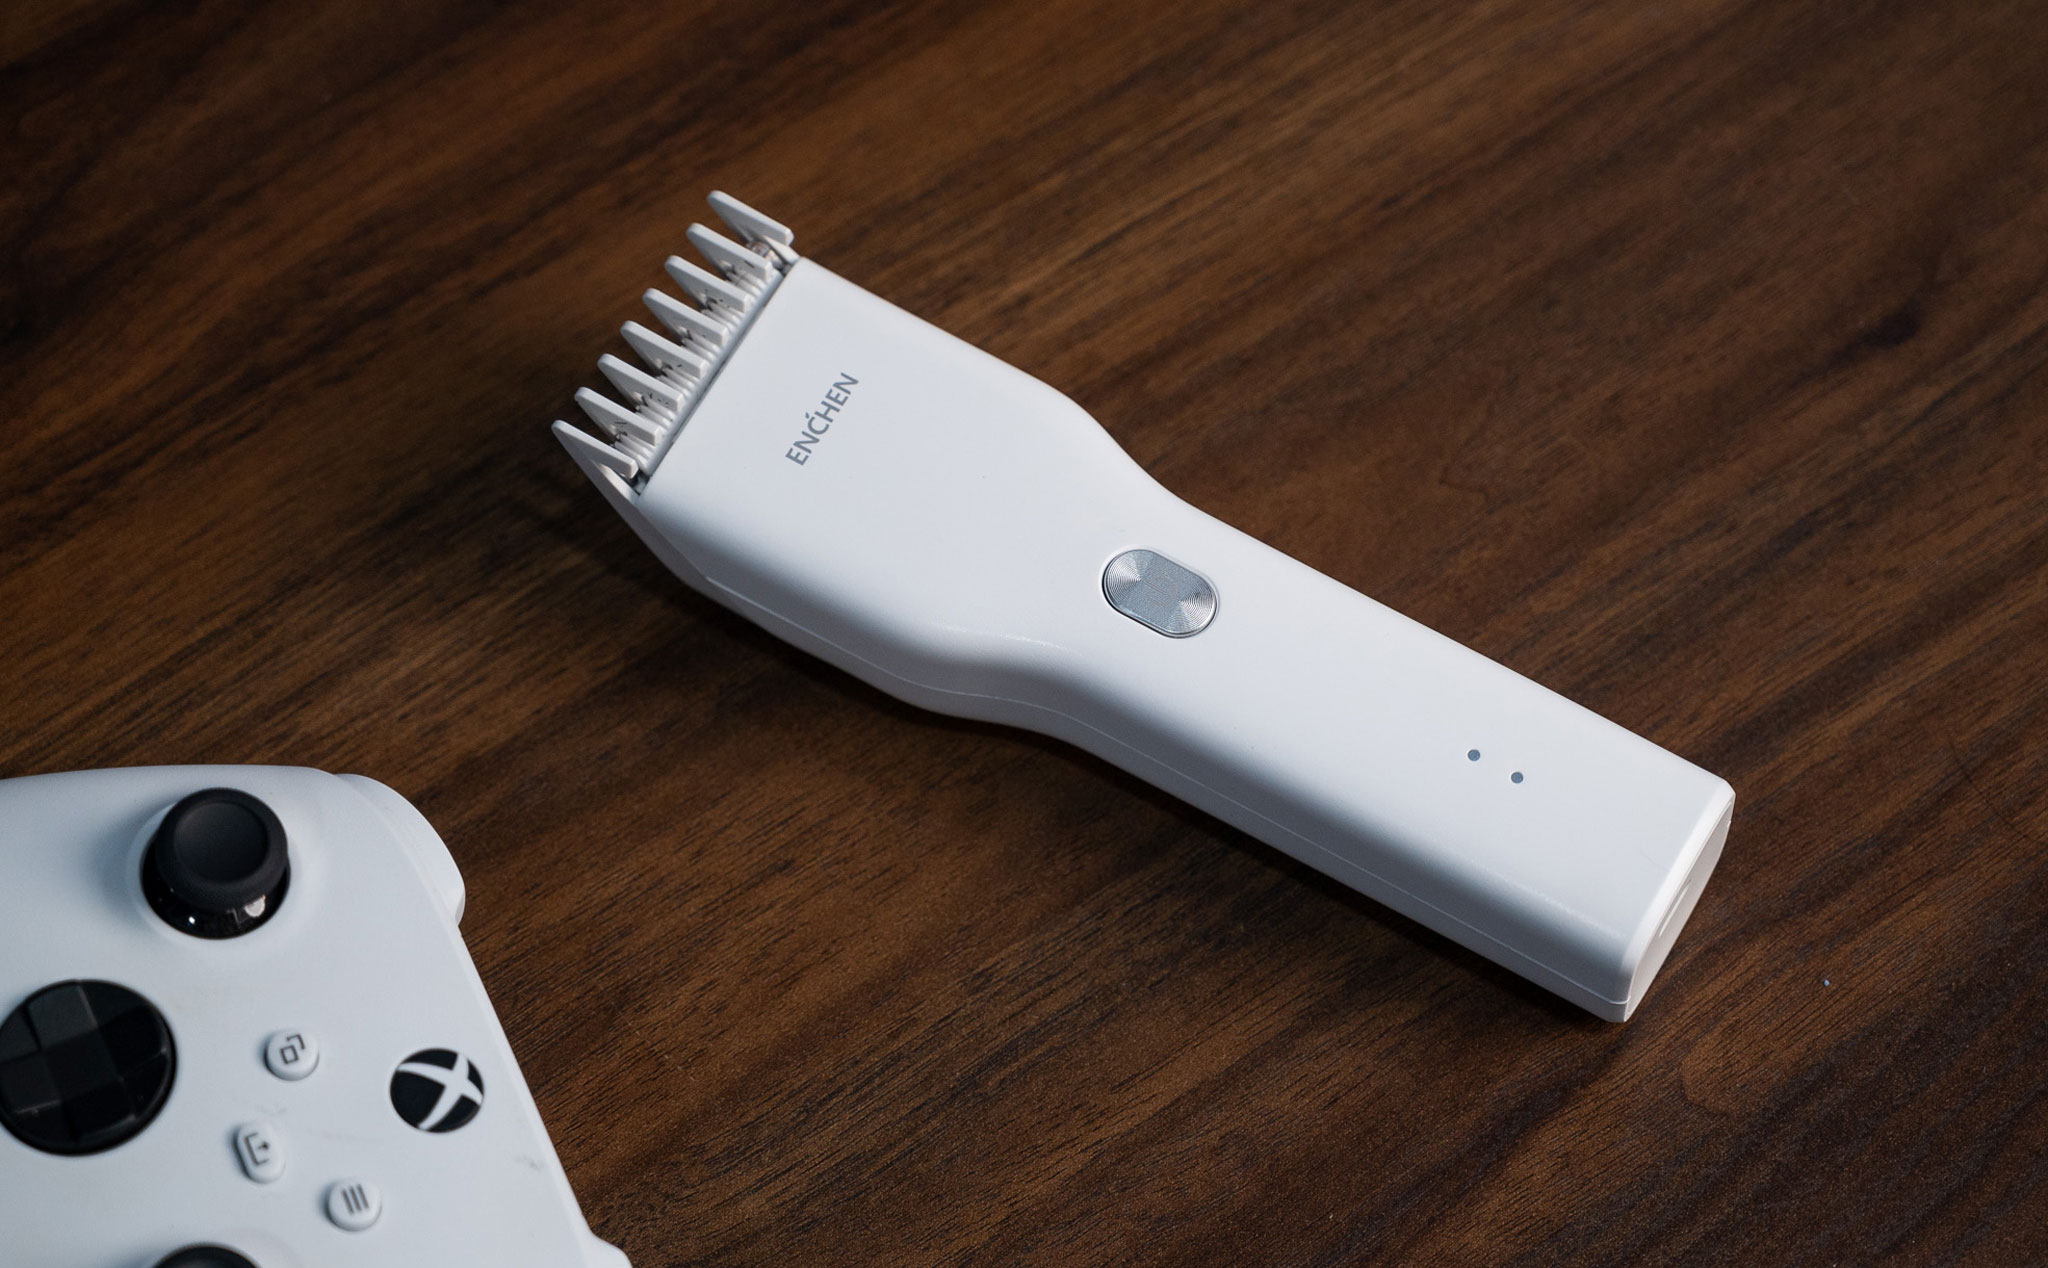 Trên tay tông đơ Xiaomi Enchen Boost: đảm bảo nhu cầu cắt tóc tại nhà, giá 250k